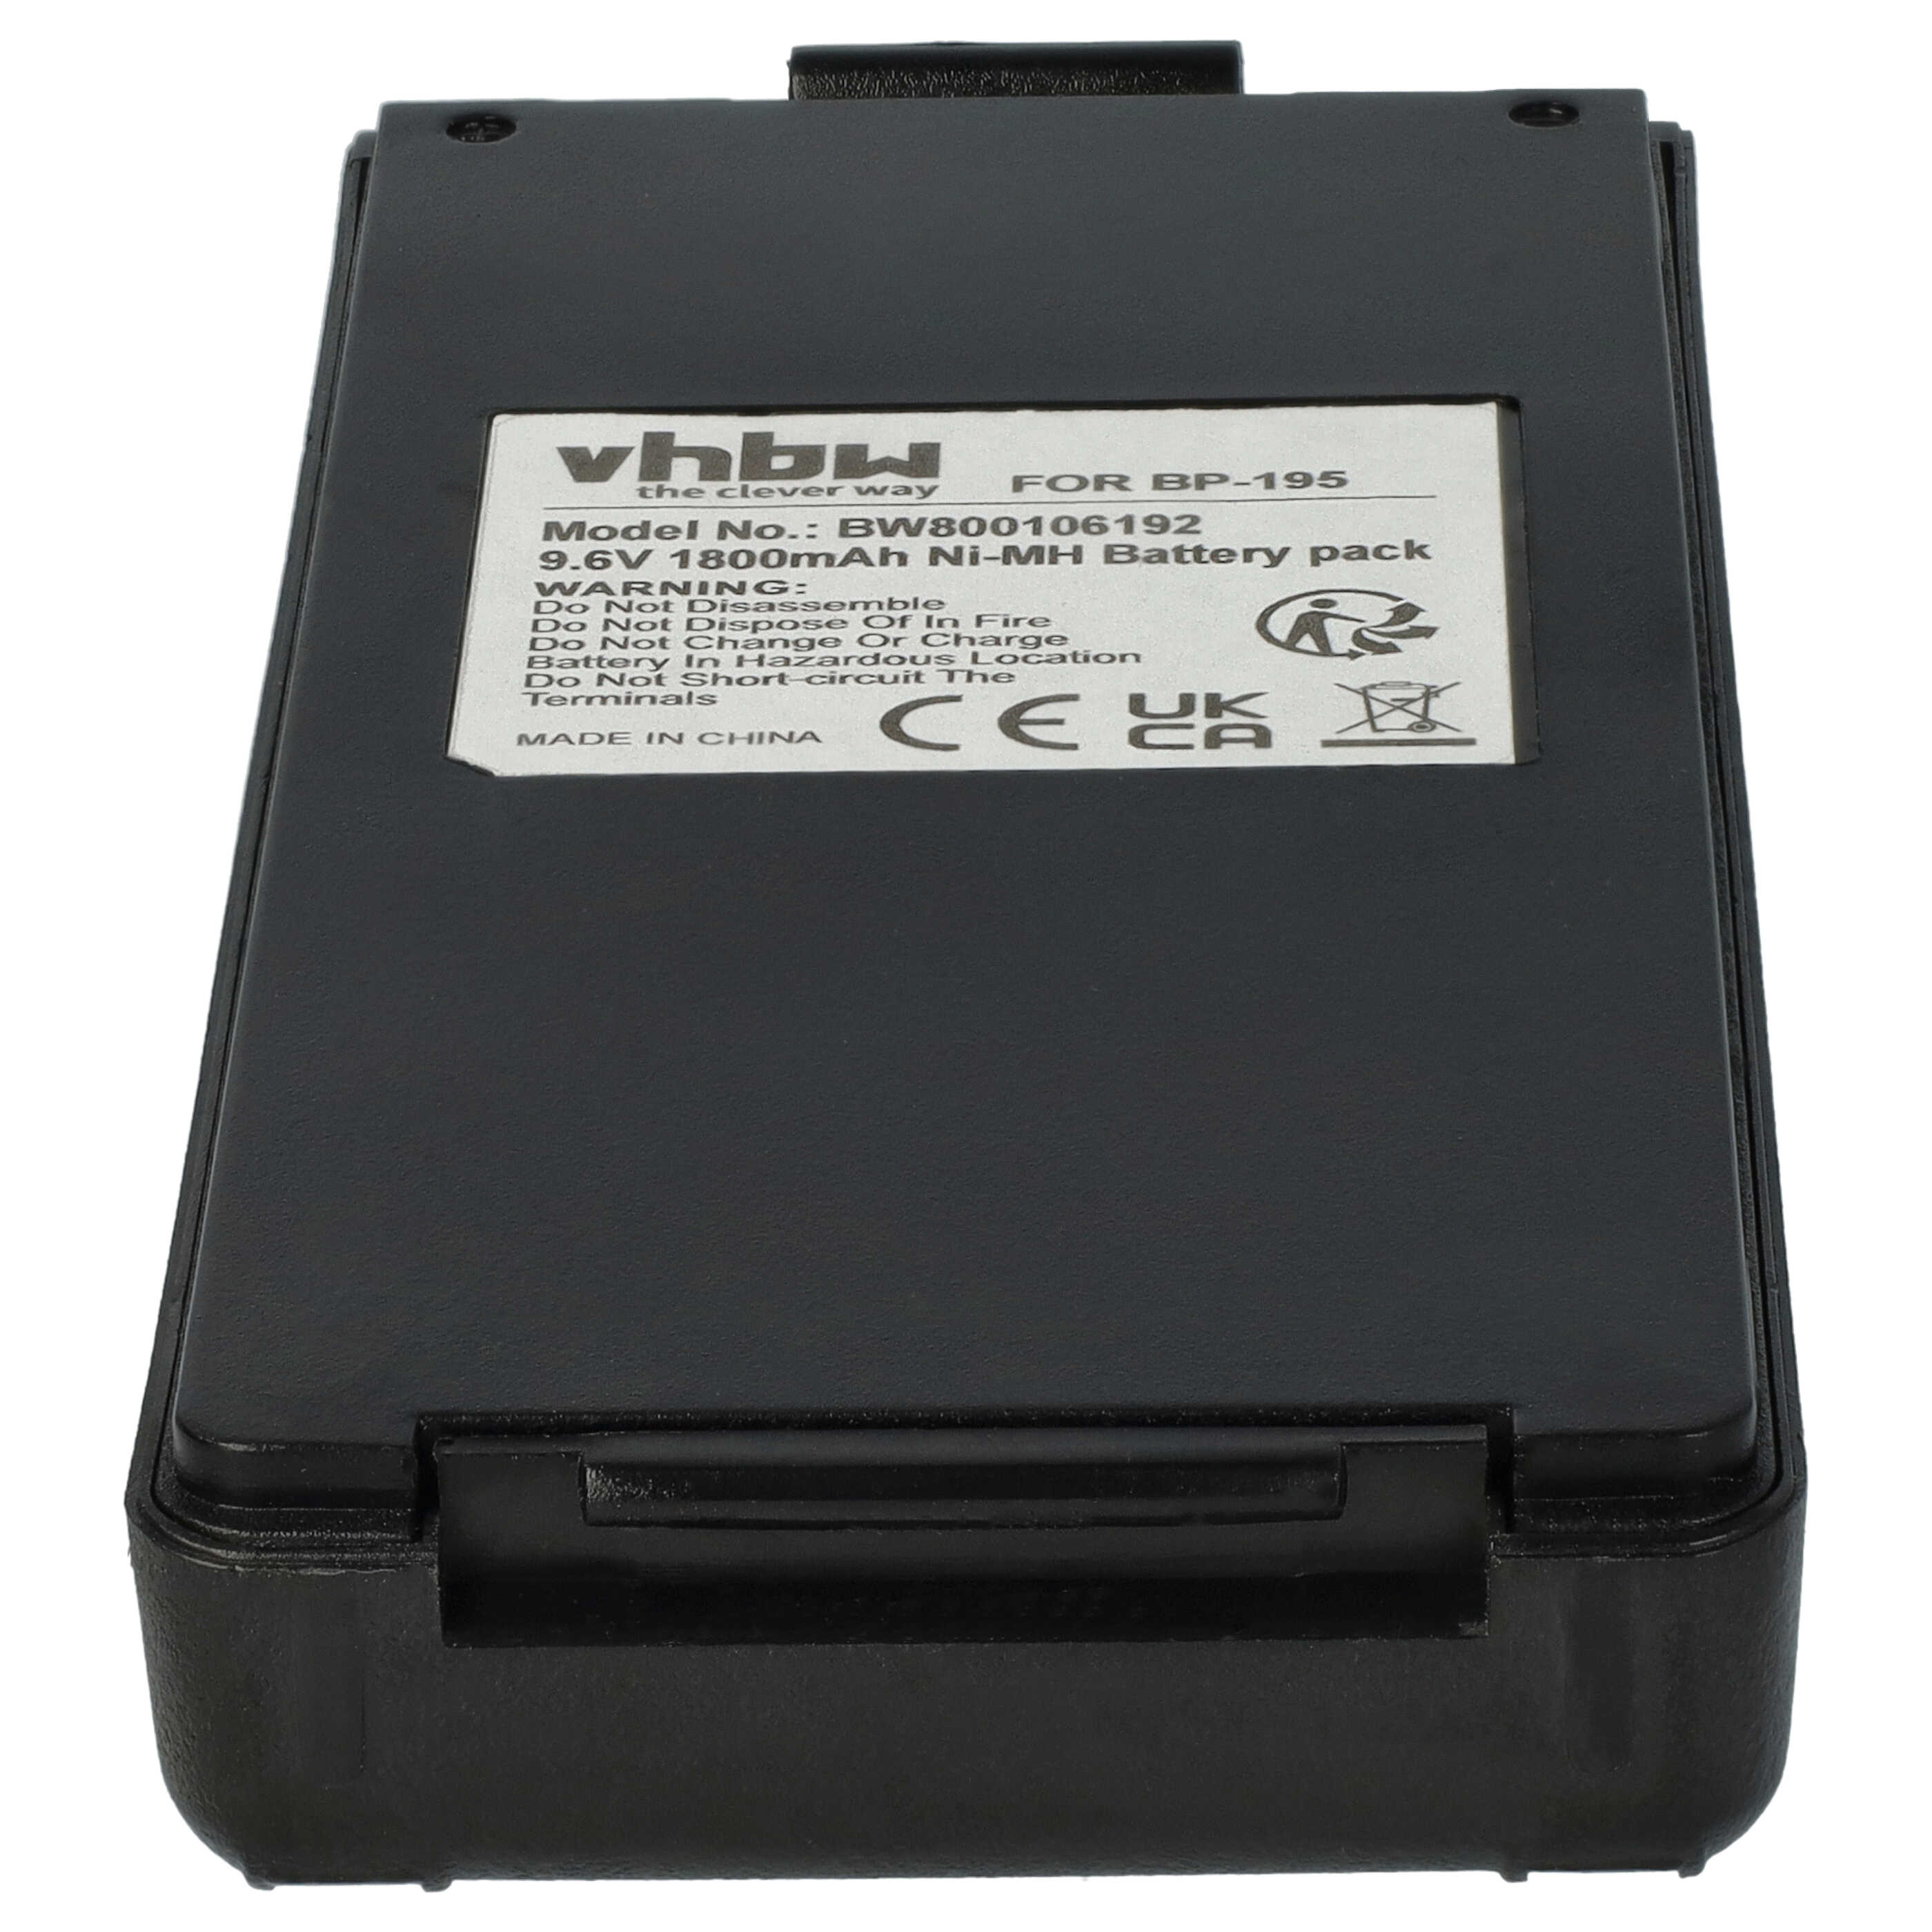 Batterie remplace Icom BP-195, BP-196H, BP-196, BP-196R pour radio talkie-walkie - 1800mAh 9,6V NiMH